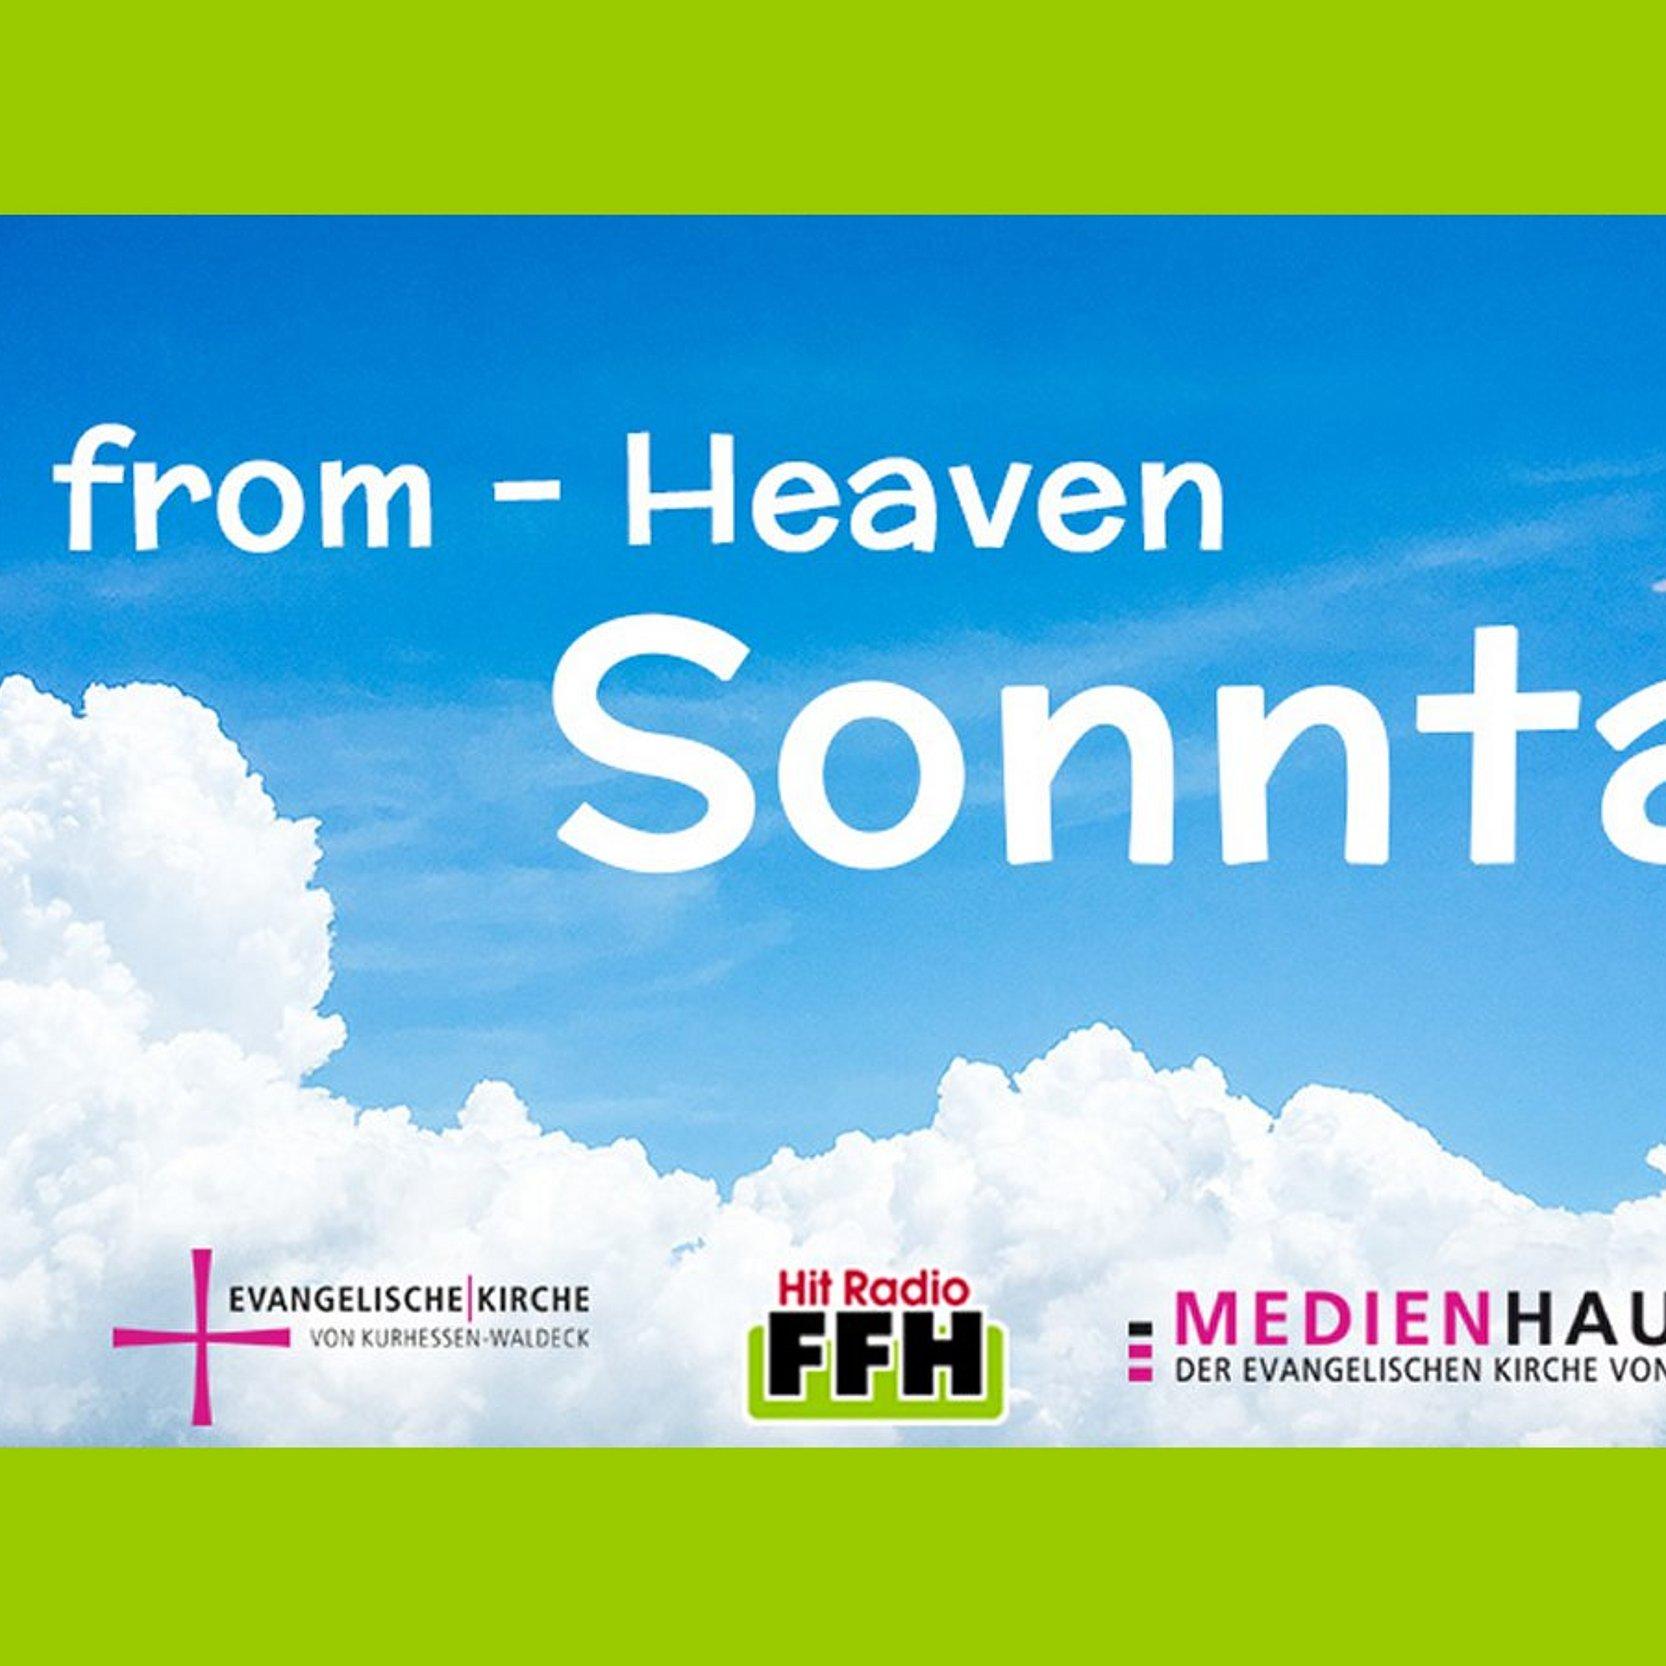 Hit-from-Heaven, Hintergrund Himmel, Logos von EKKW FFH und medio.tv